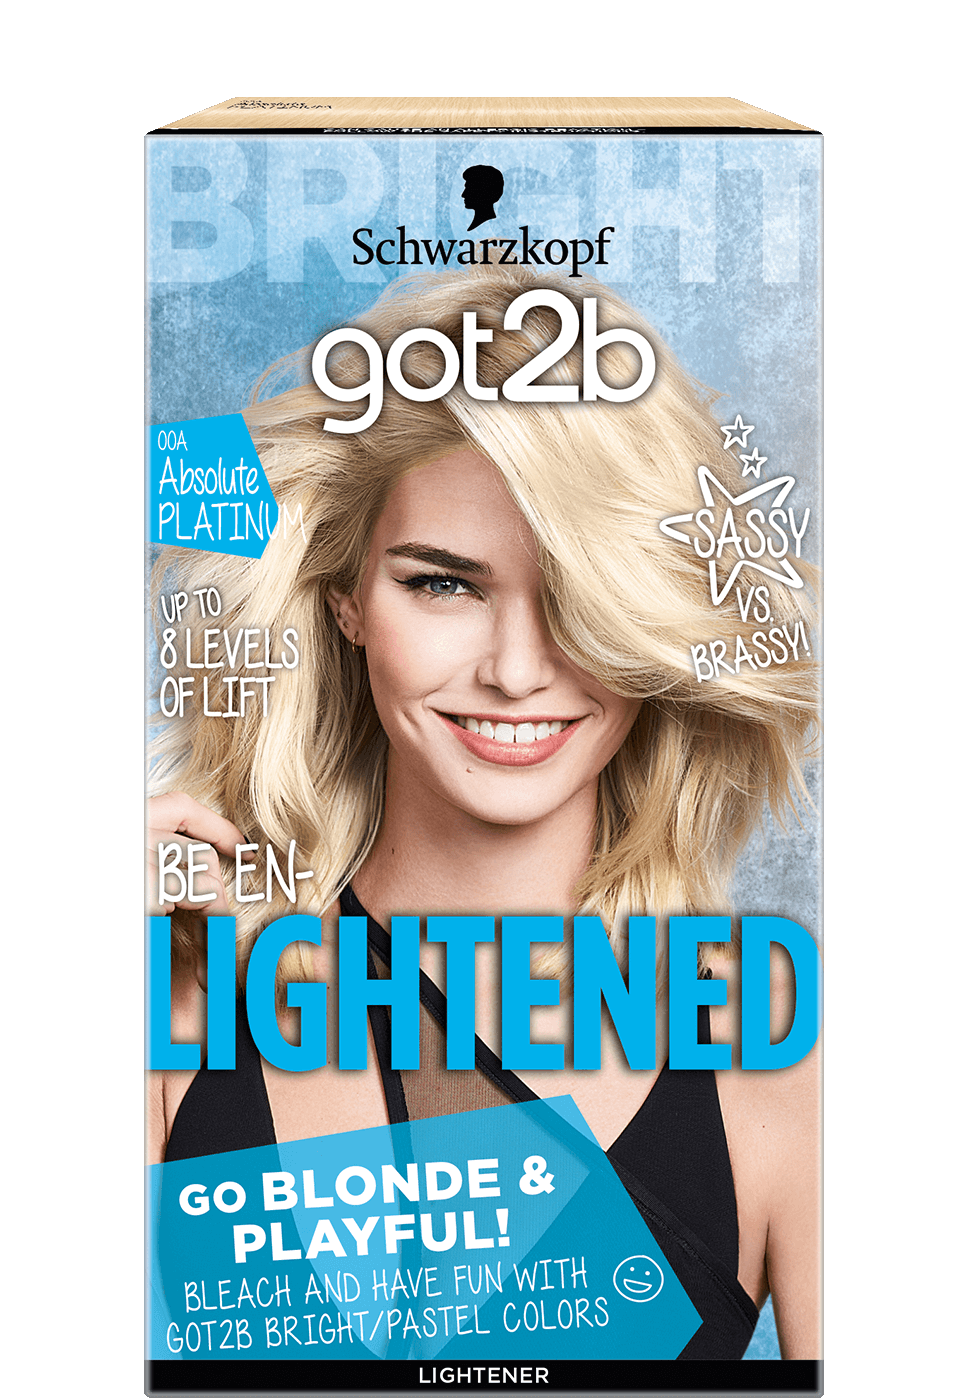 Schwarzkopf Got 2B Be En-lightened Permanent Lightener